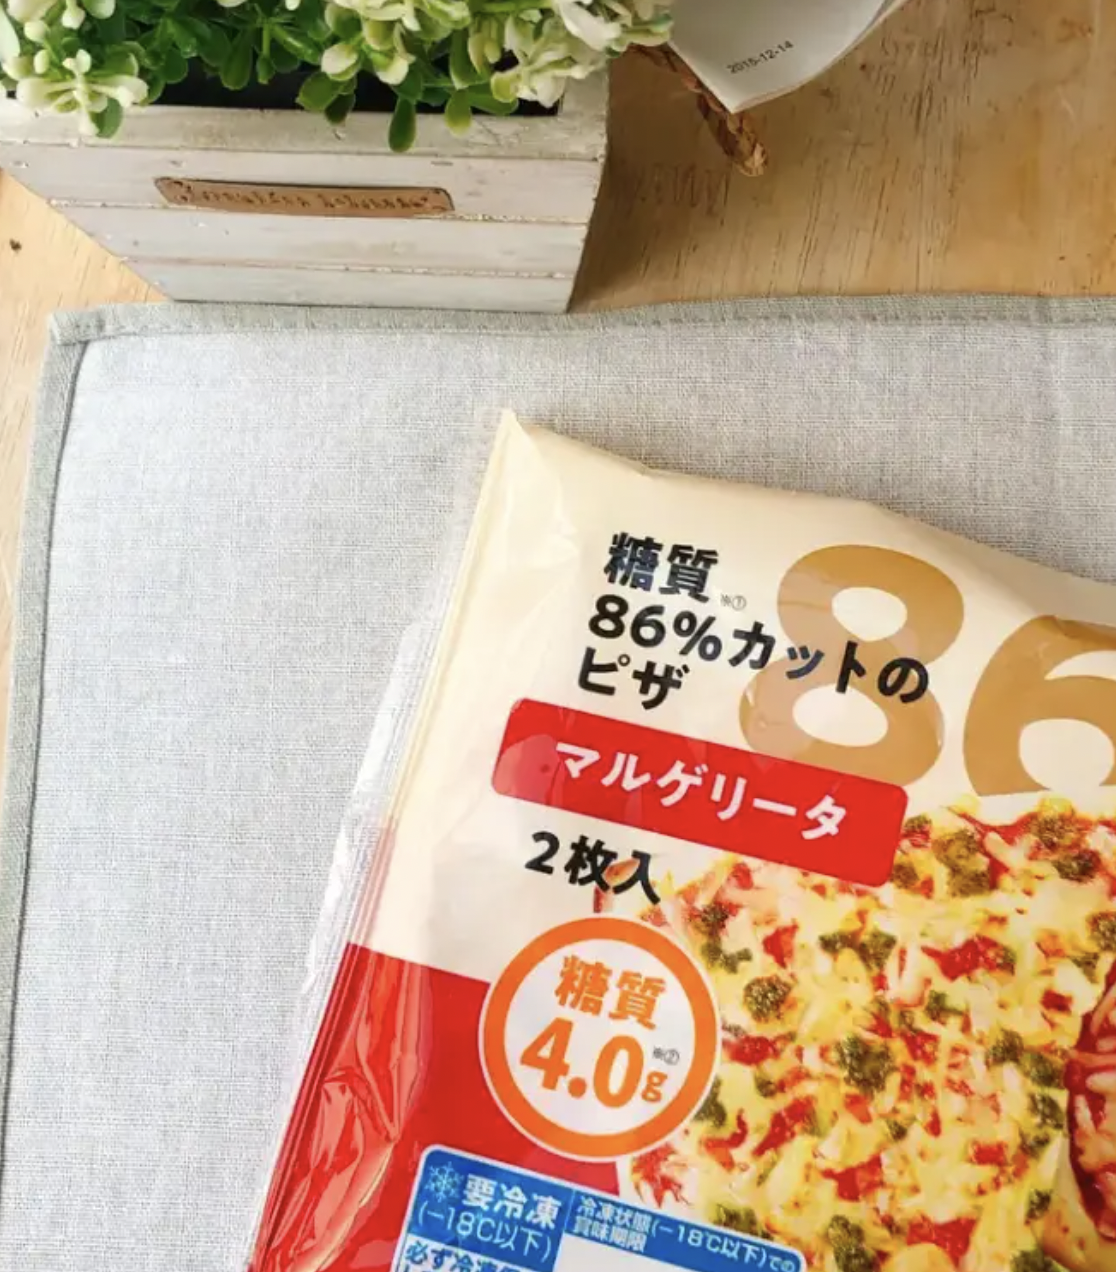 シャトレーゼのオススメのパン「糖質86%カットのピザ マルゲリータ」